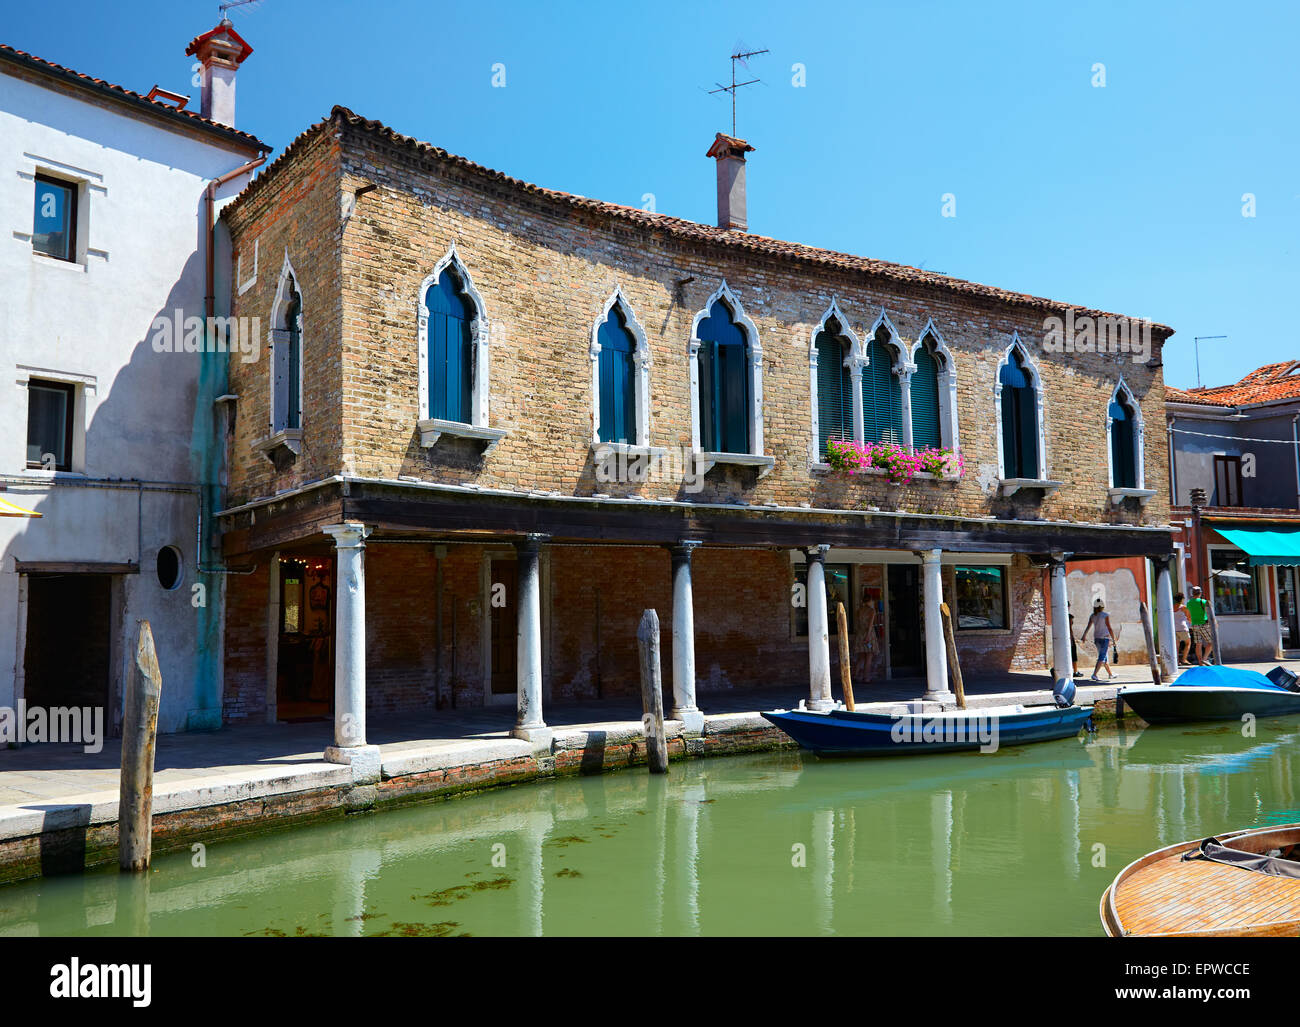 Vue sur le canal Rio dei Vetrai et embarkments dei Vetrai à Murano, Italie Banque D'Images